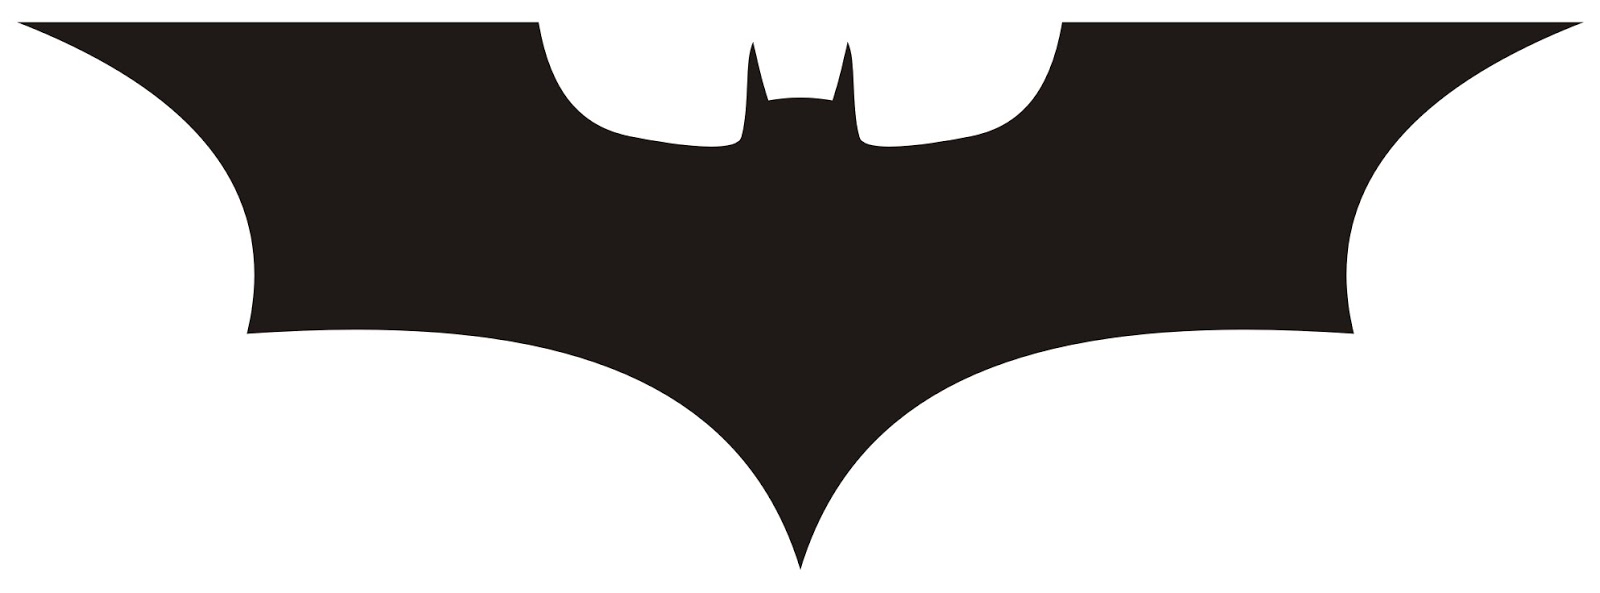 batman dark knight logo png - Clip Art Library